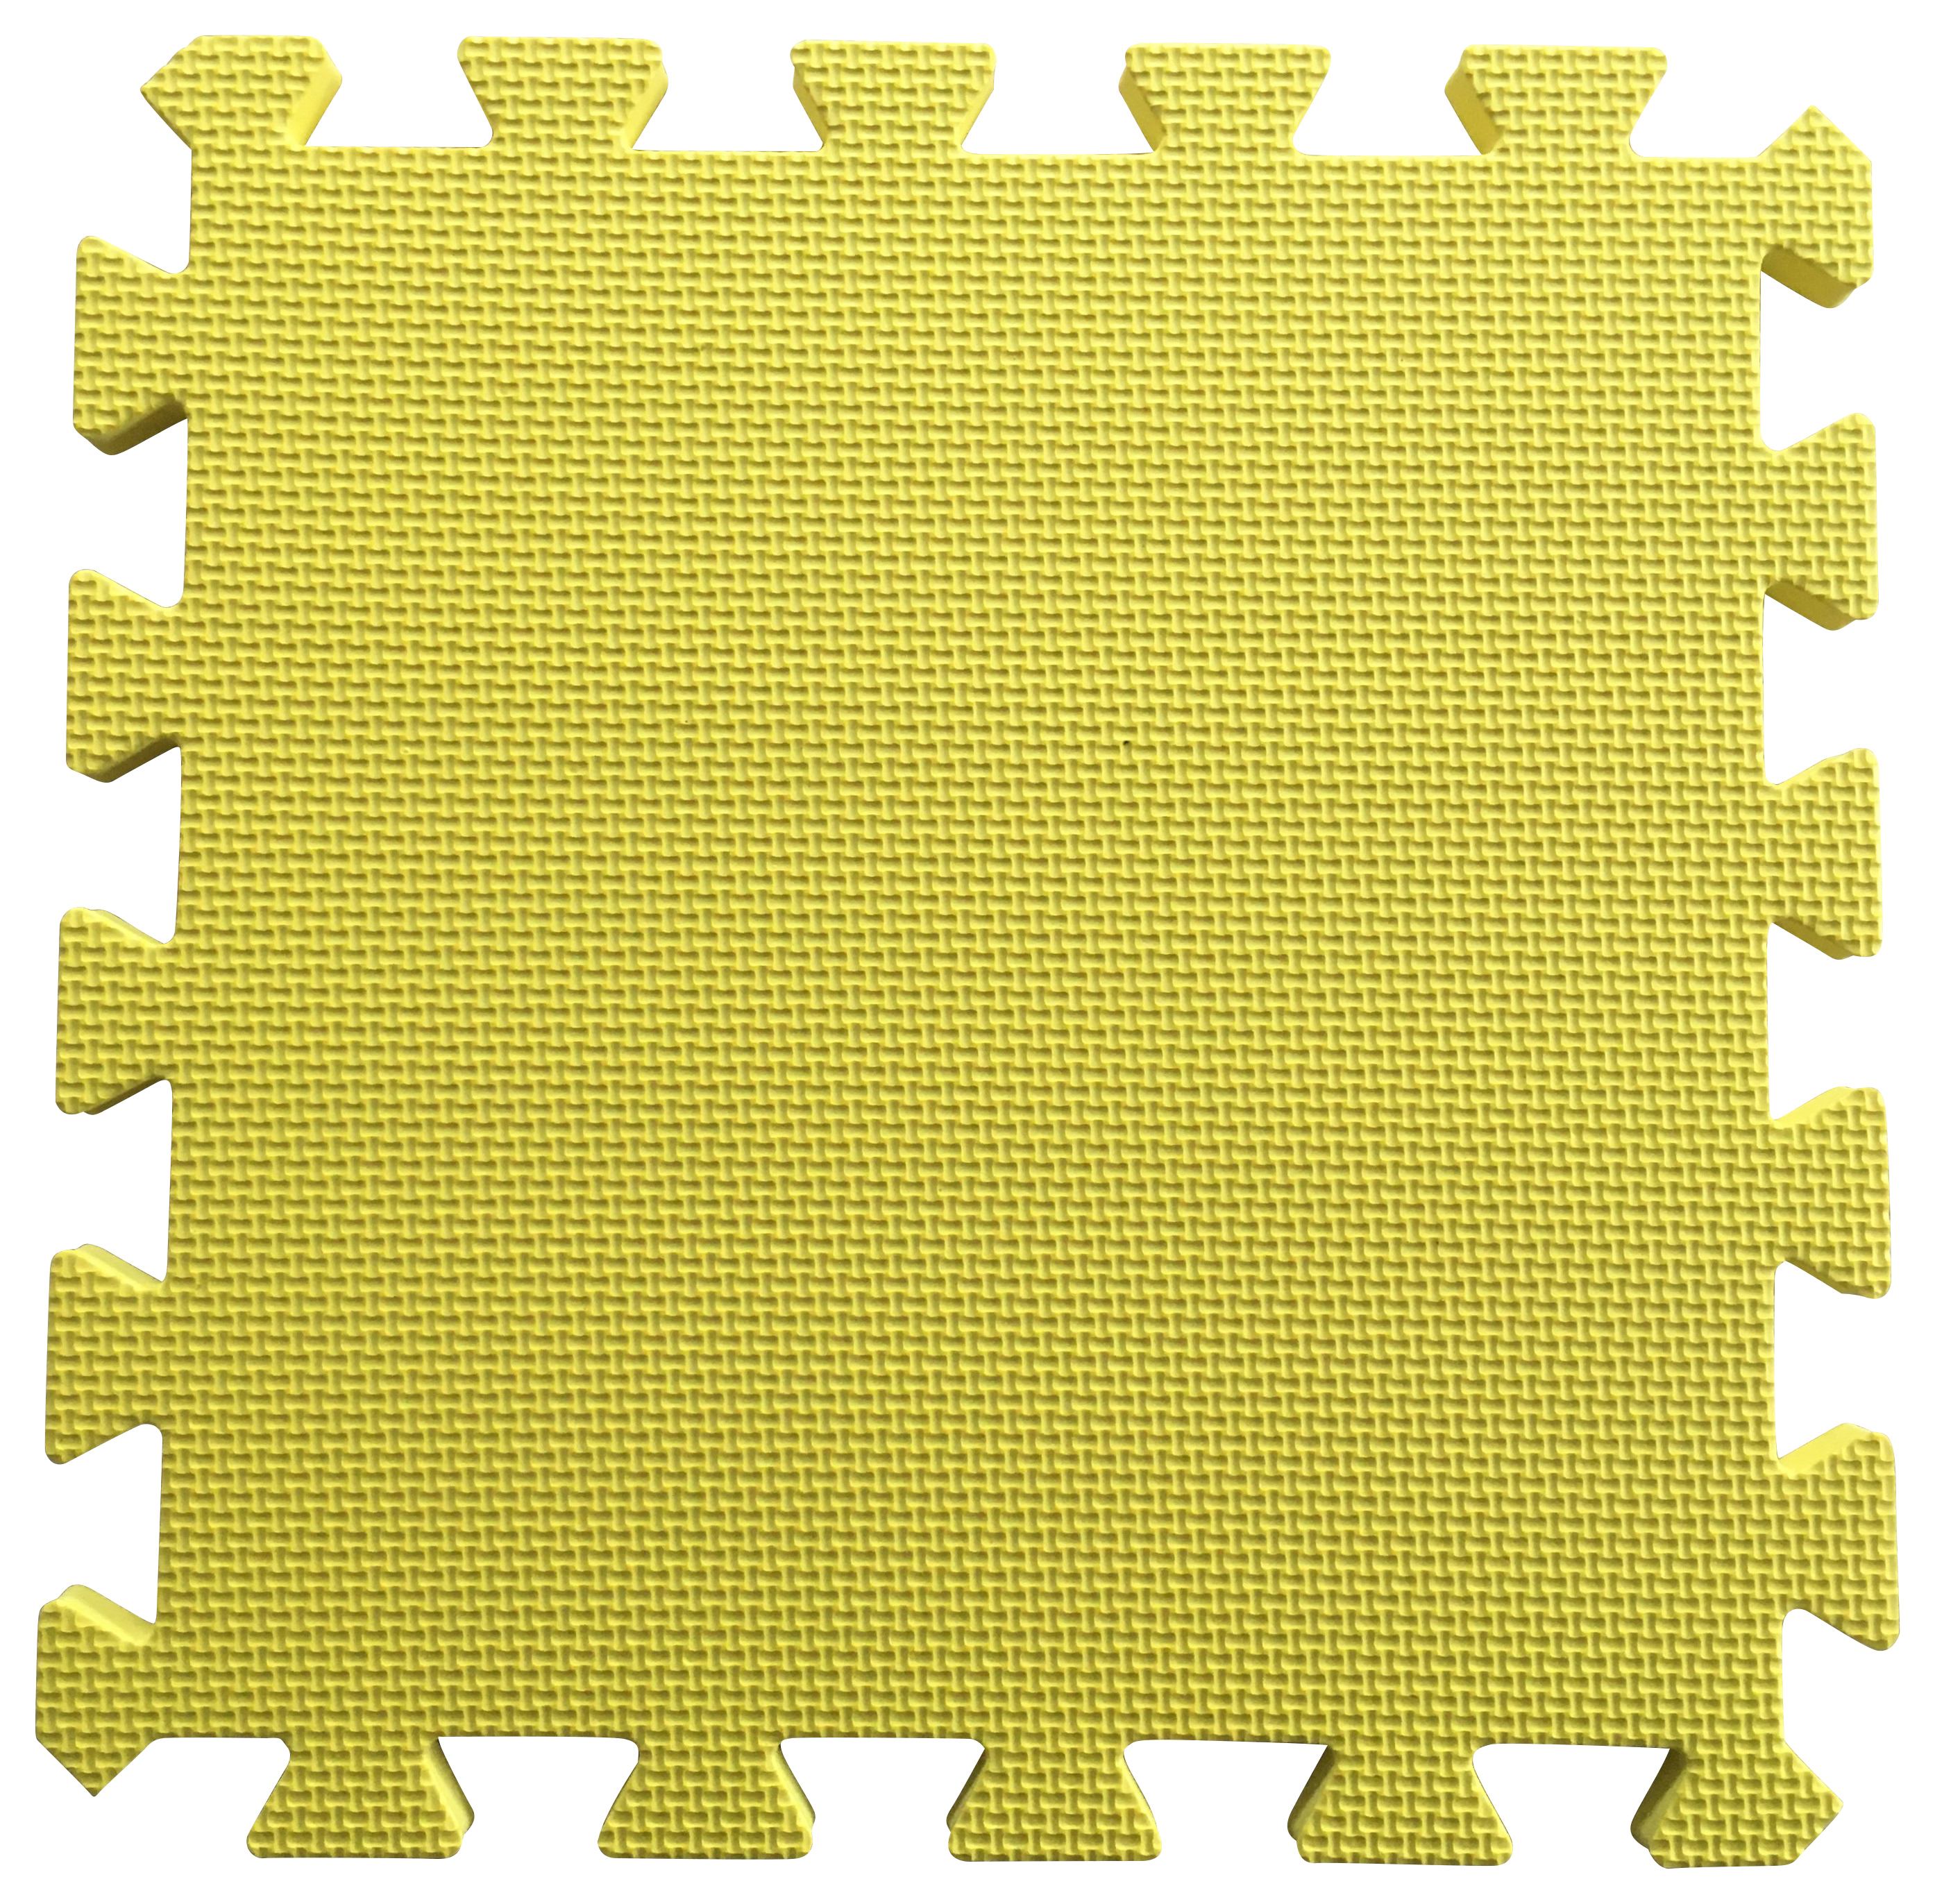 Warm Floor Yellow Interlocking Floor Tiles for Garden Buildings - 9 x 10ft